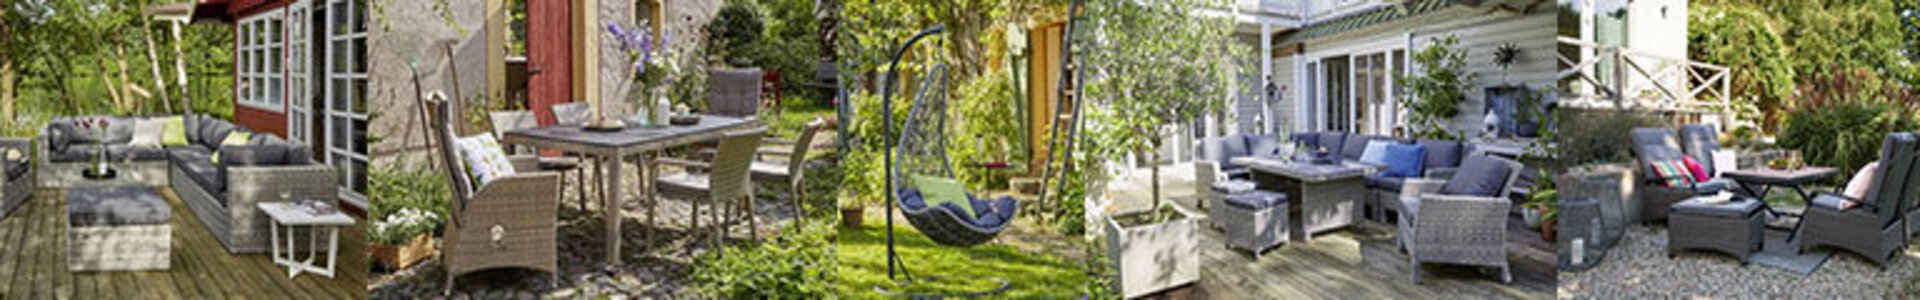 Bannerbild der Inhofer Eigenmarke Outdoor - Gartenmöbel mit Flair.